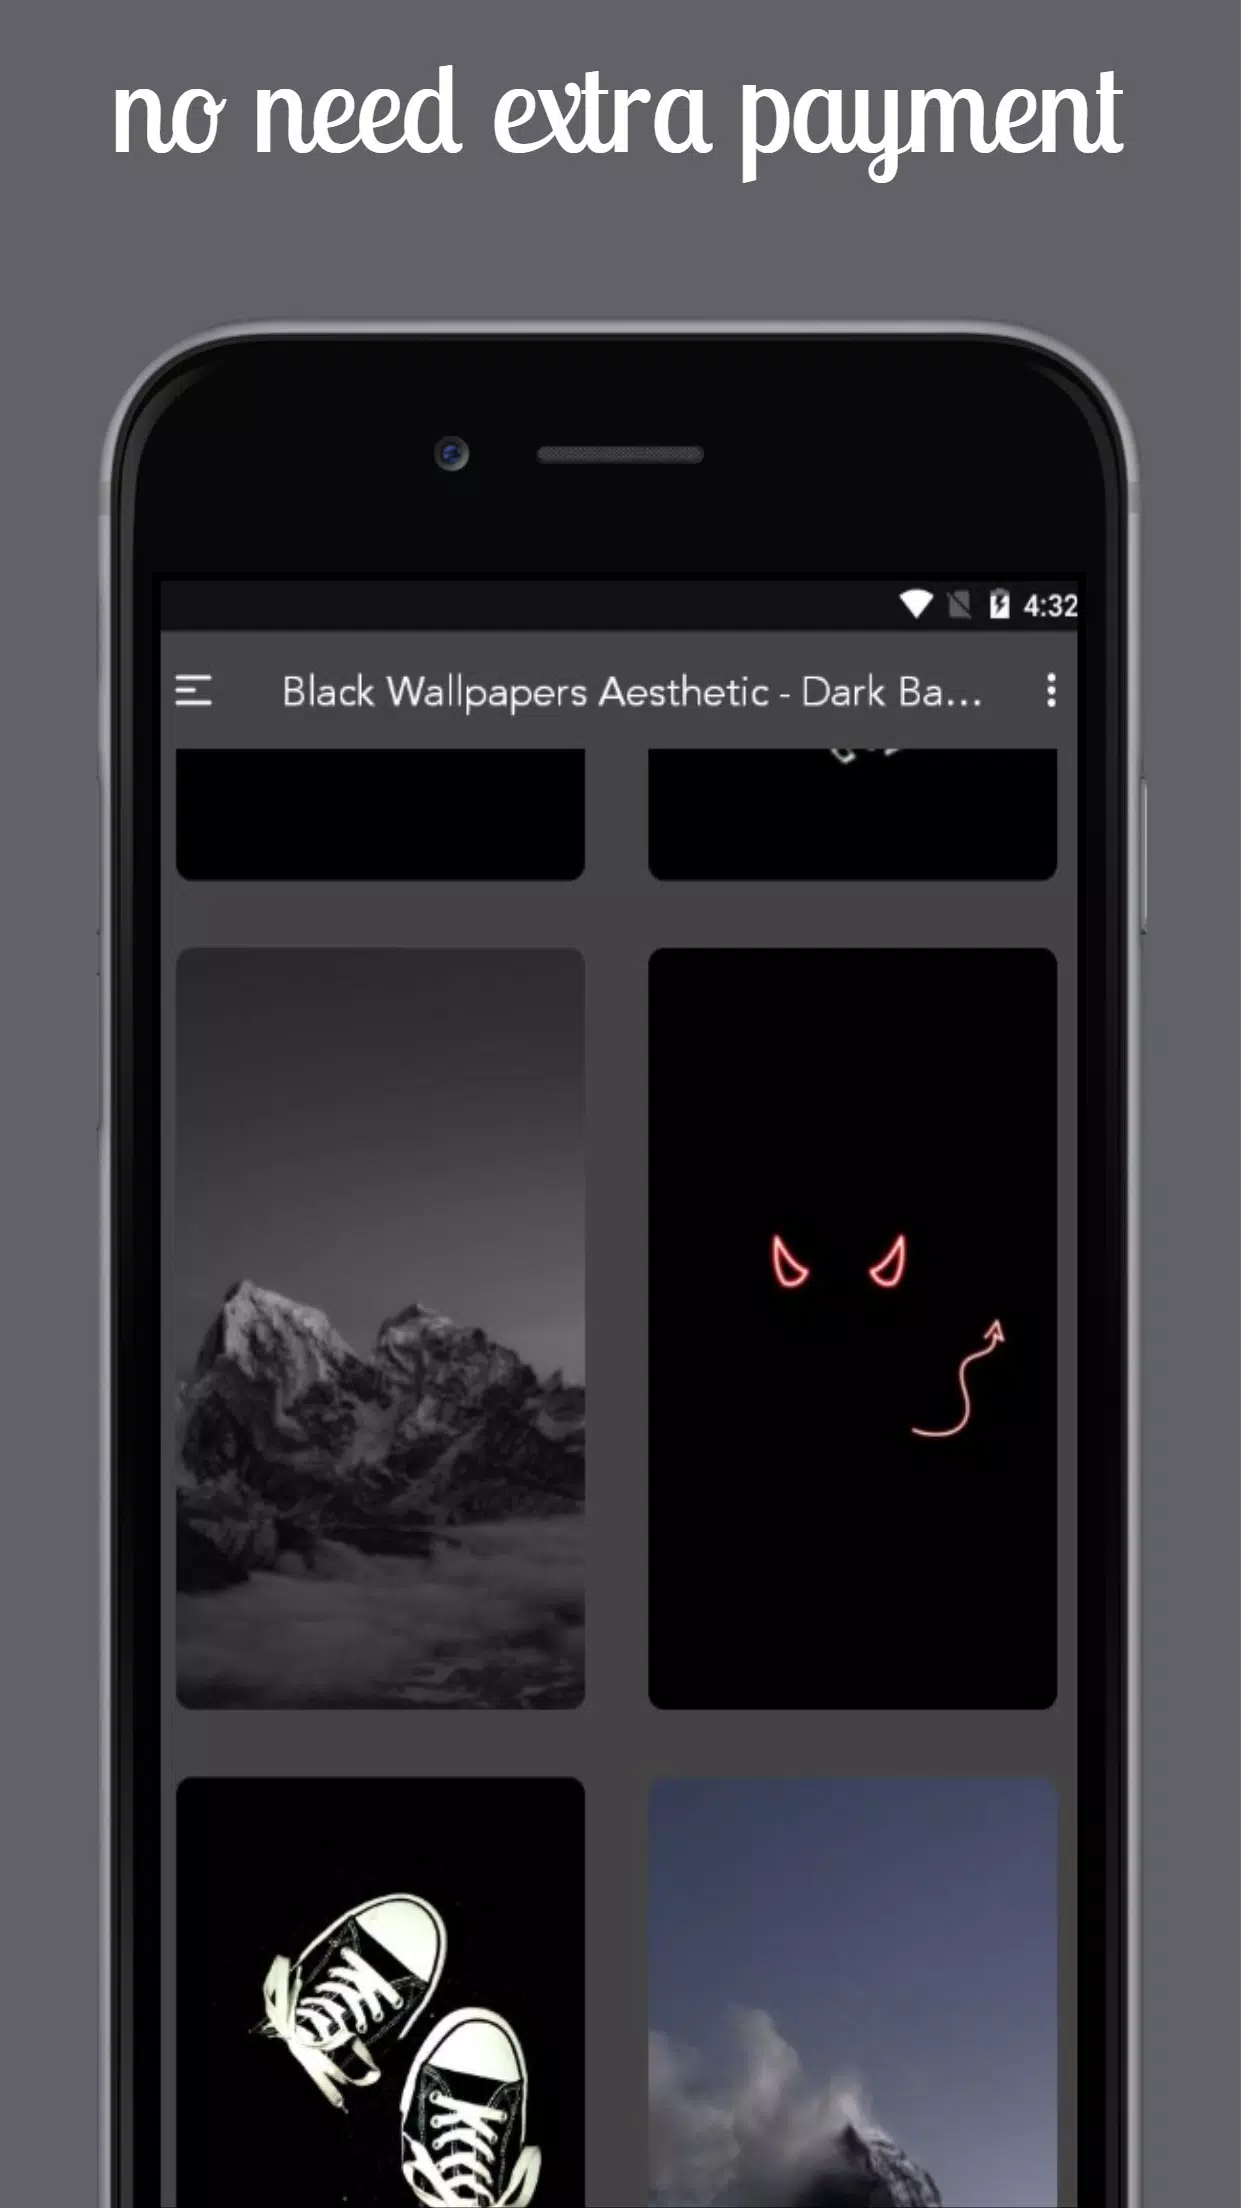 Apple Hintergrundbild 1242x2208. Black Wallpaper Aesthetic Hintergrund APK für Android herunterladen